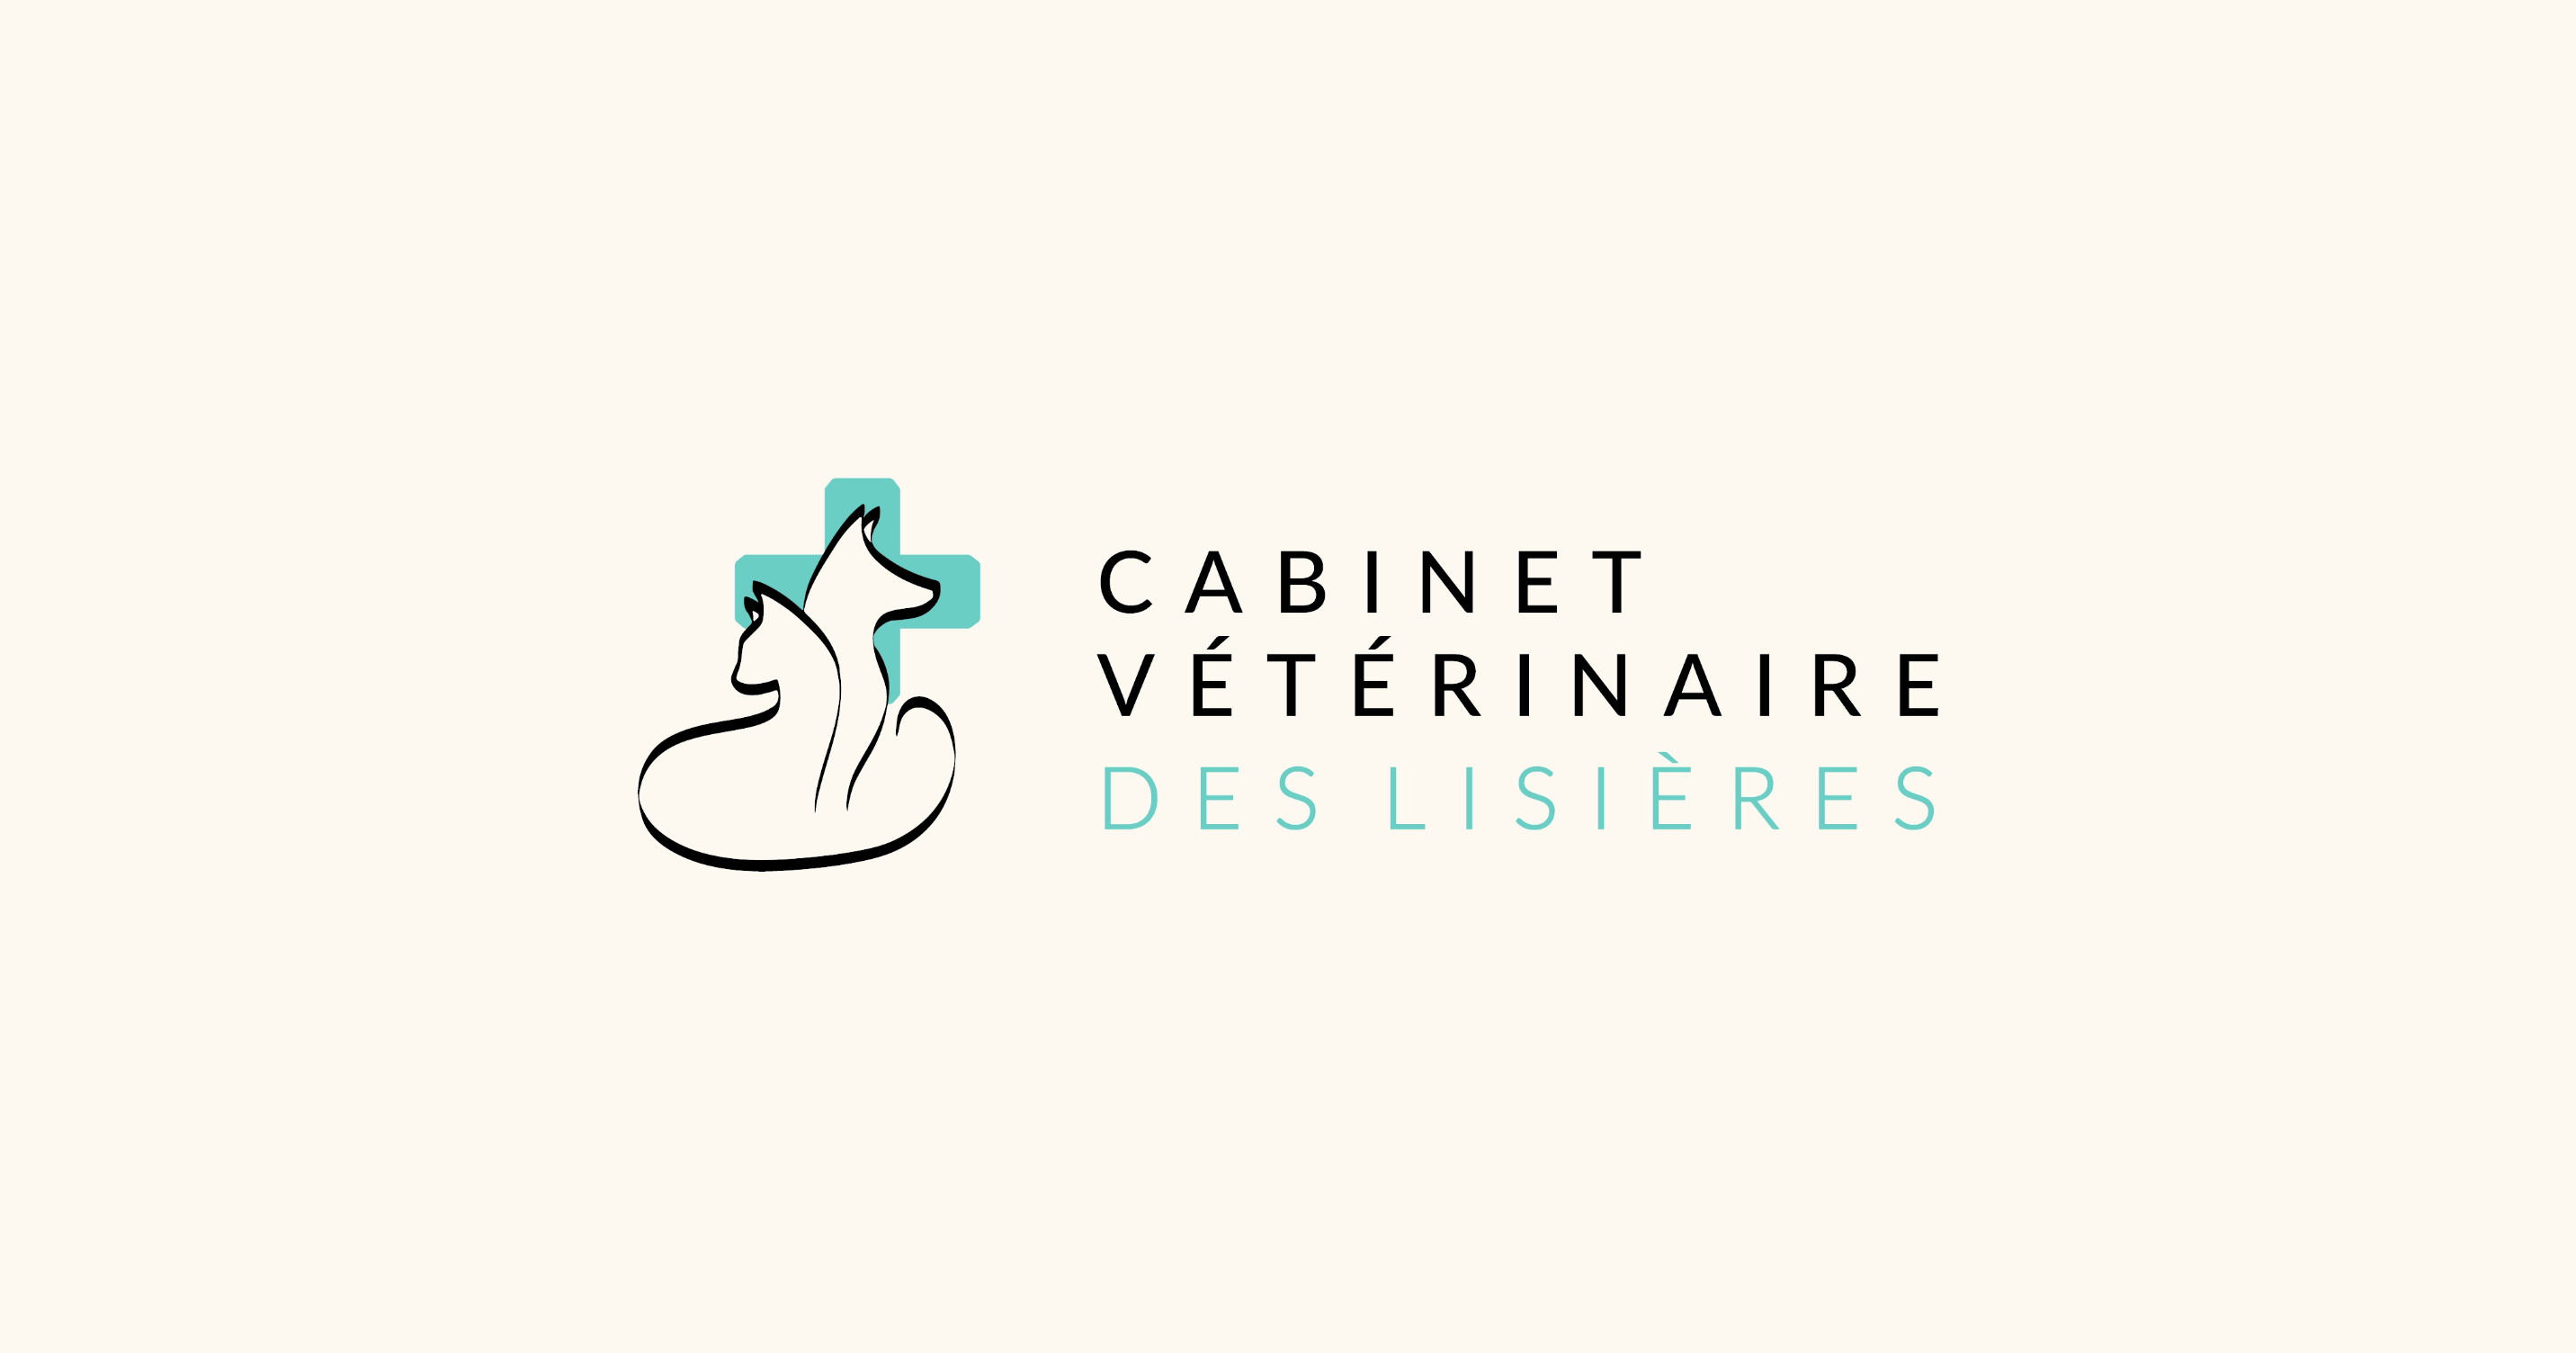 Cabinet Veterinaire Des Lisieres Video Miniature